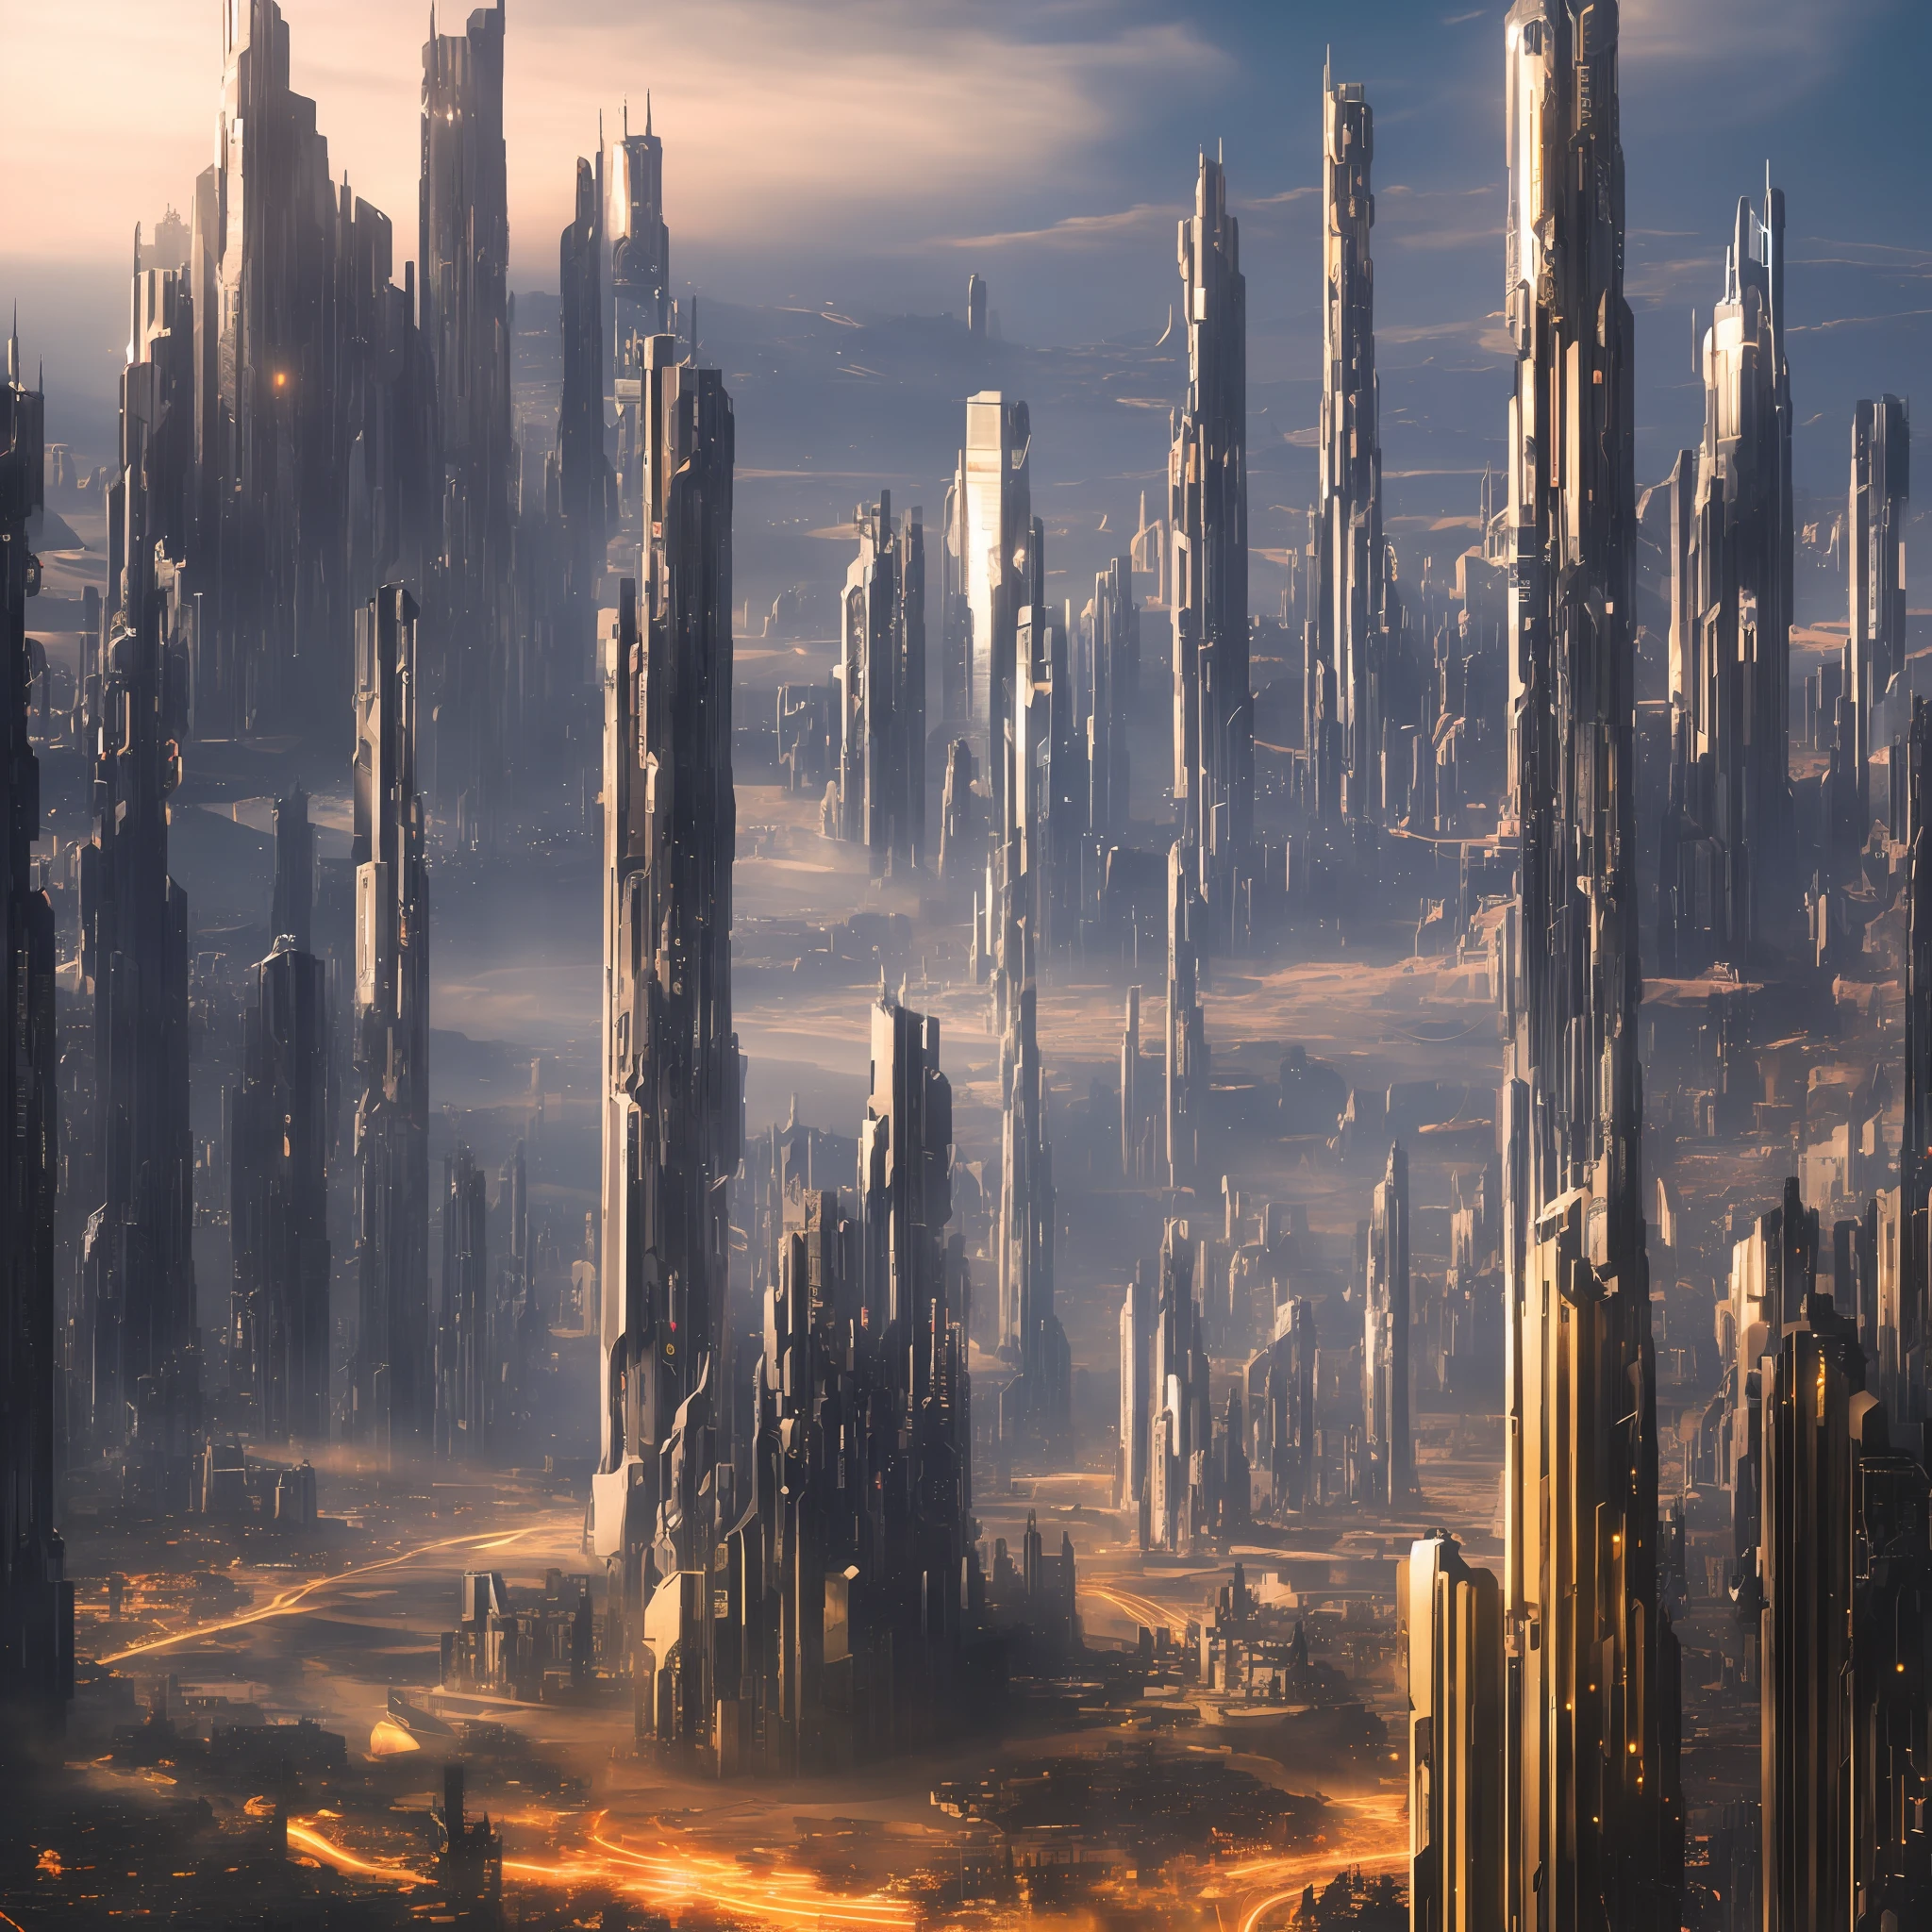 futuristic sci-fi 城市scape, 科幻小說, 超現實主義, 高解析度, 城市